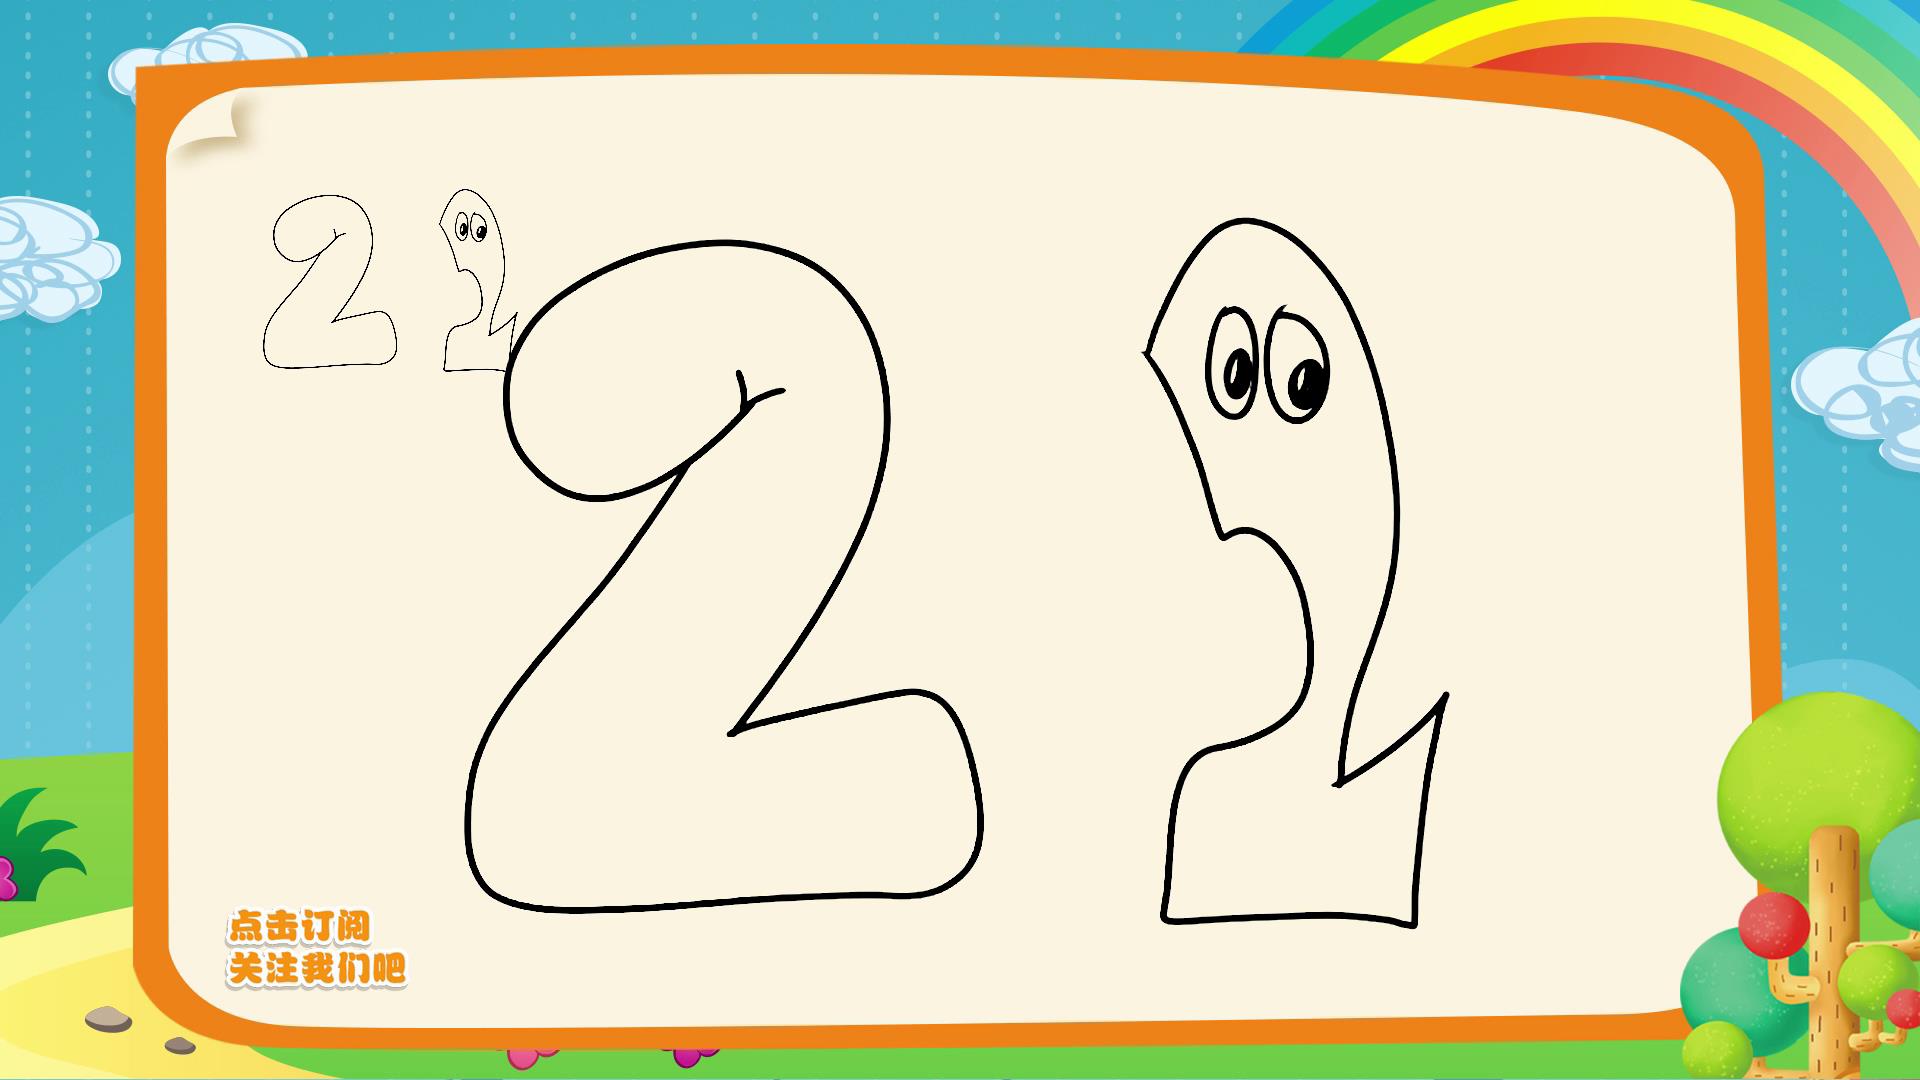 10数字简笔画,让你的孩子从绘画认识数字.